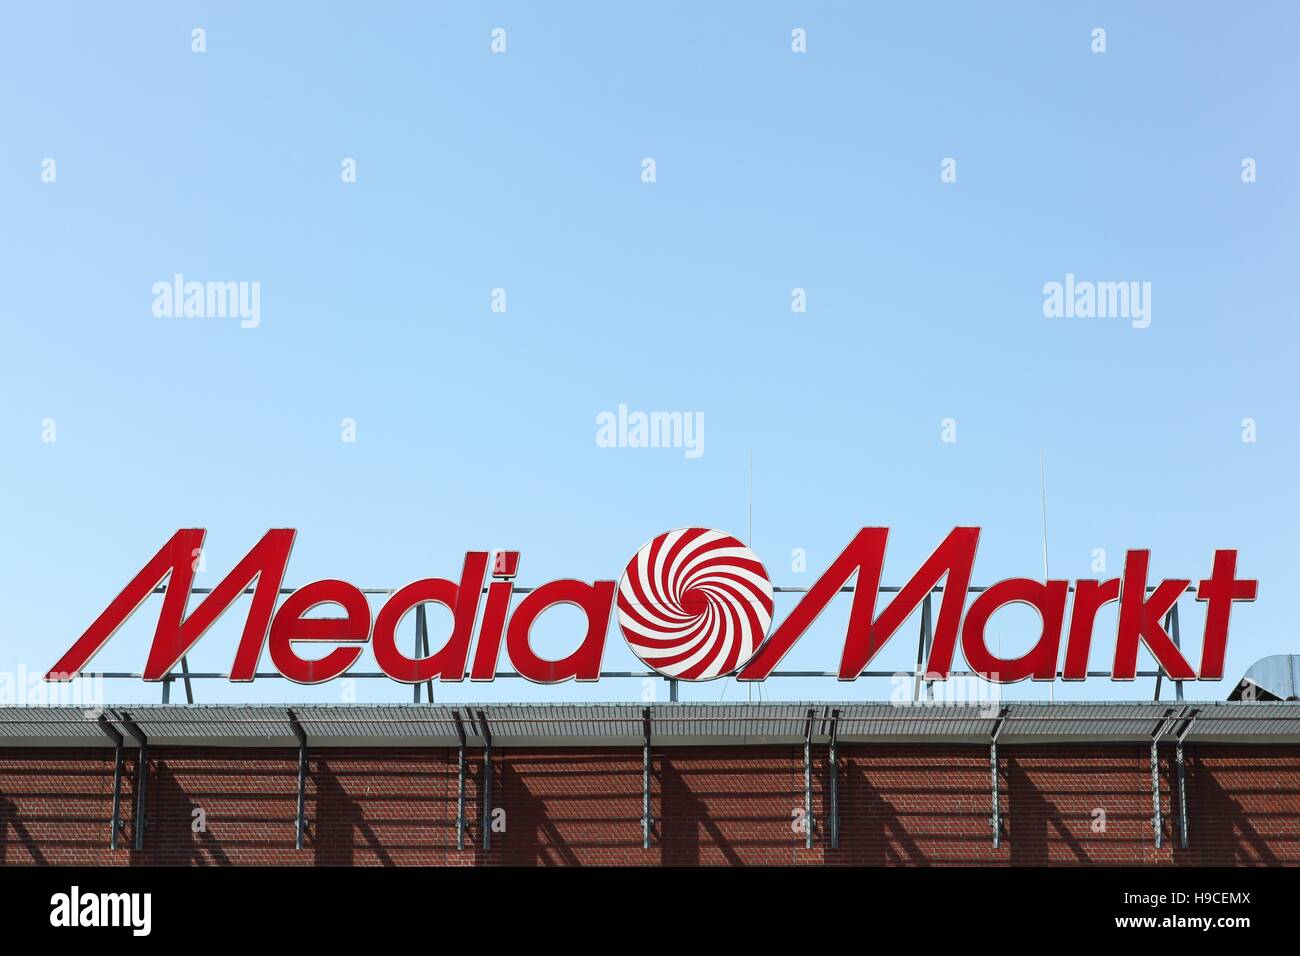 Sobre Media Markt – MediaMarkt